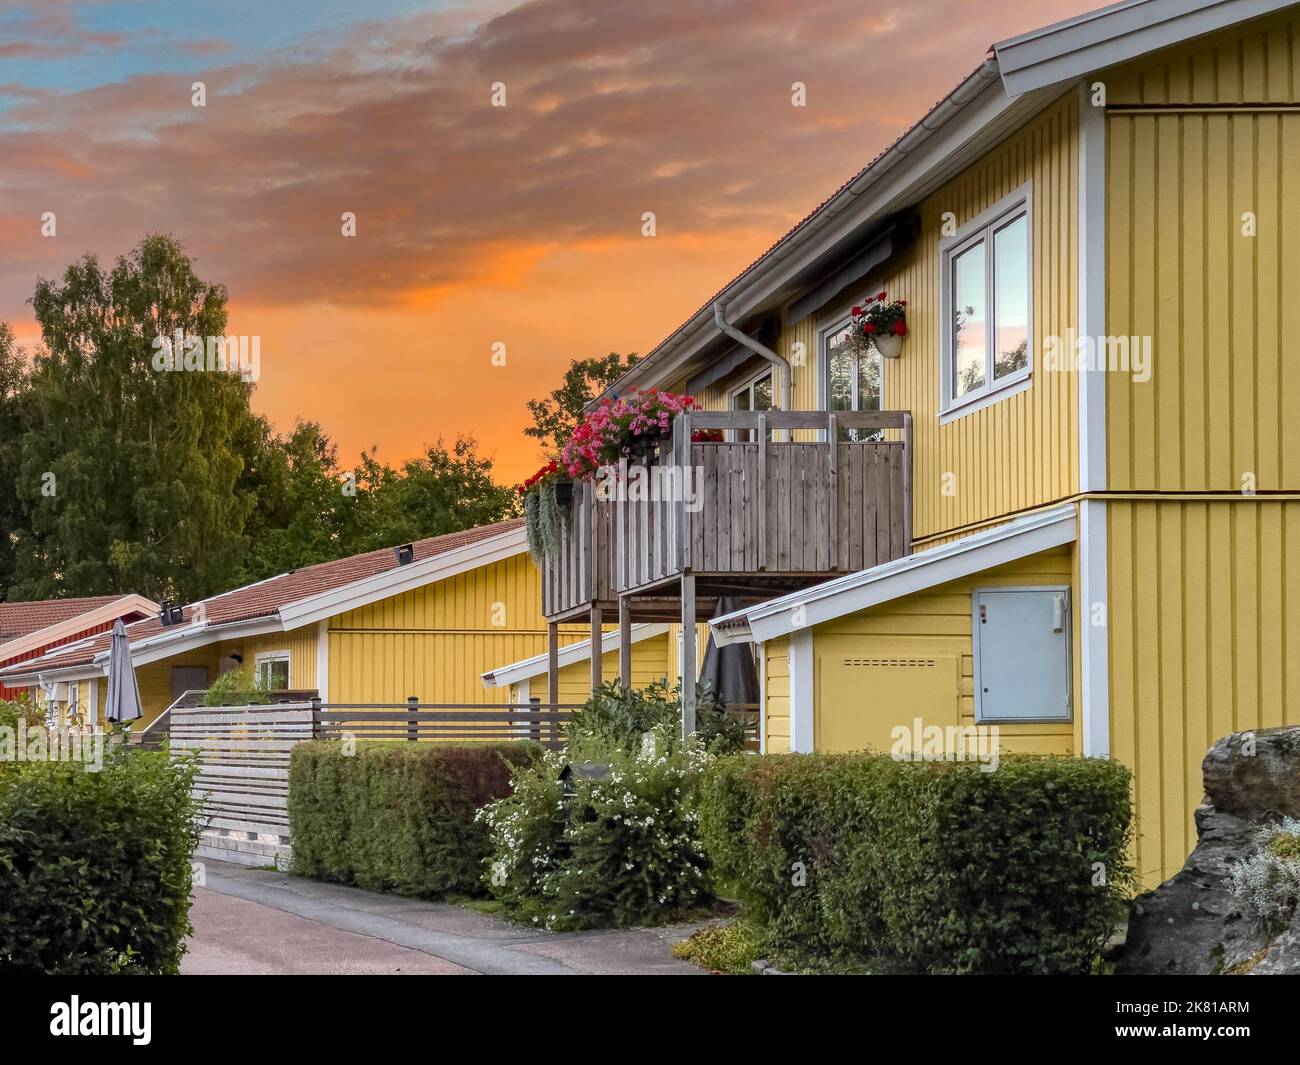 Typische traditionelle schwedische halbgetrennte, gelb bemalte Holzhäuser in einer Reihe in einer wunderschönen ruhigen Wohngegend Stockfoto